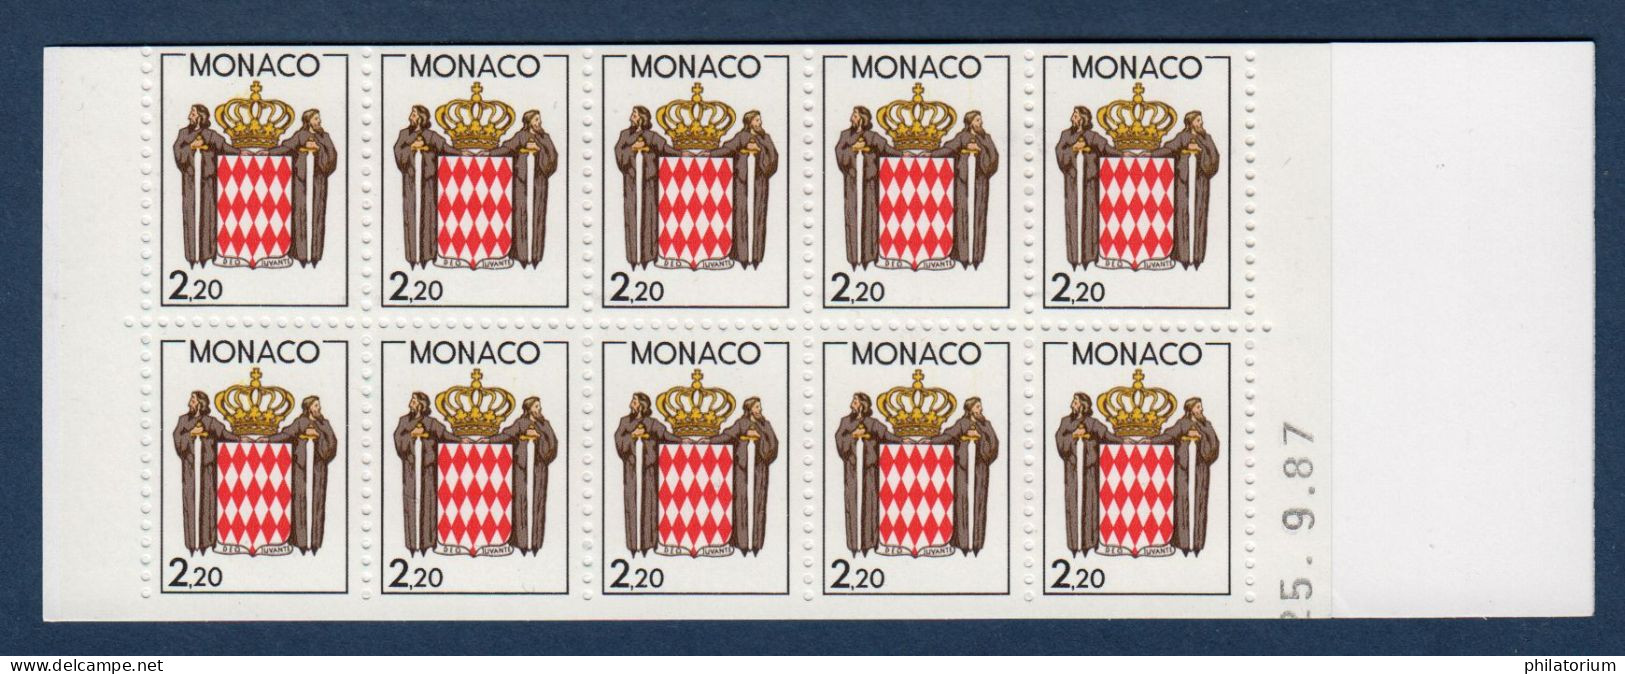 Monaco Timbre Neuf, Yv 1613, Carnet Usage Courant Non Plié, Daté 25.9.87, - Carnets